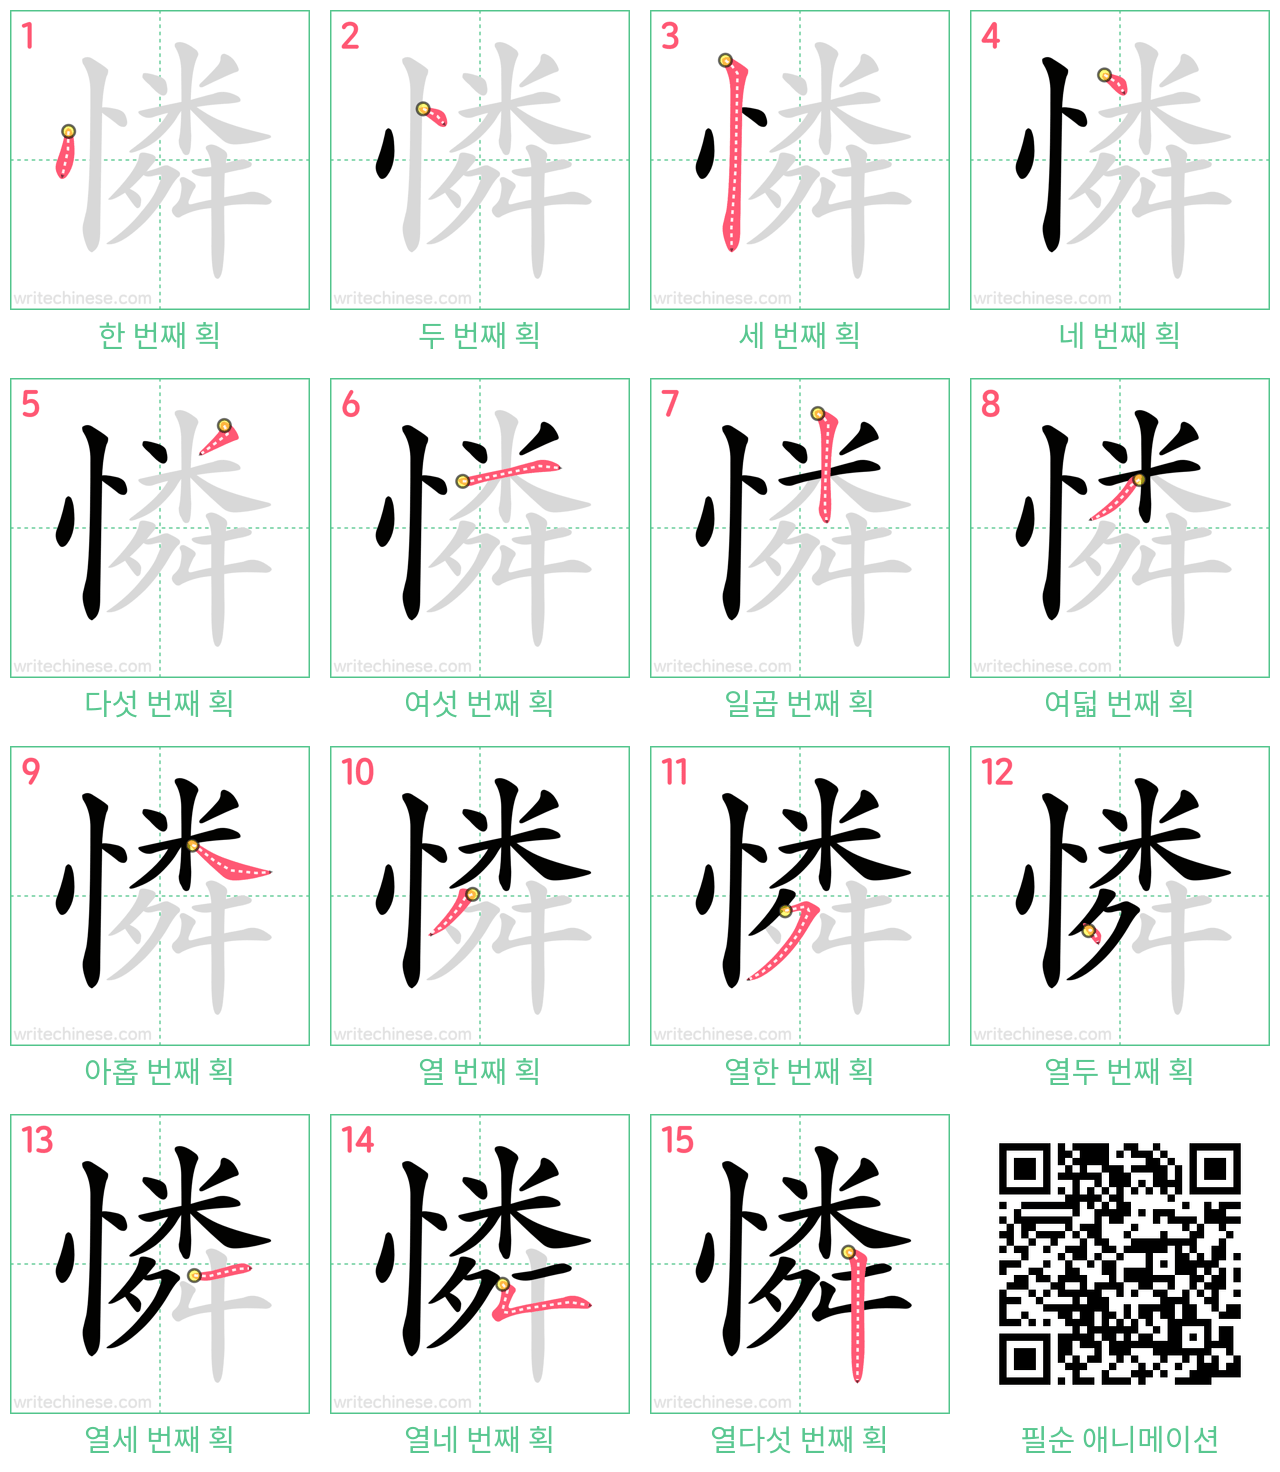 憐 step-by-step stroke order diagrams